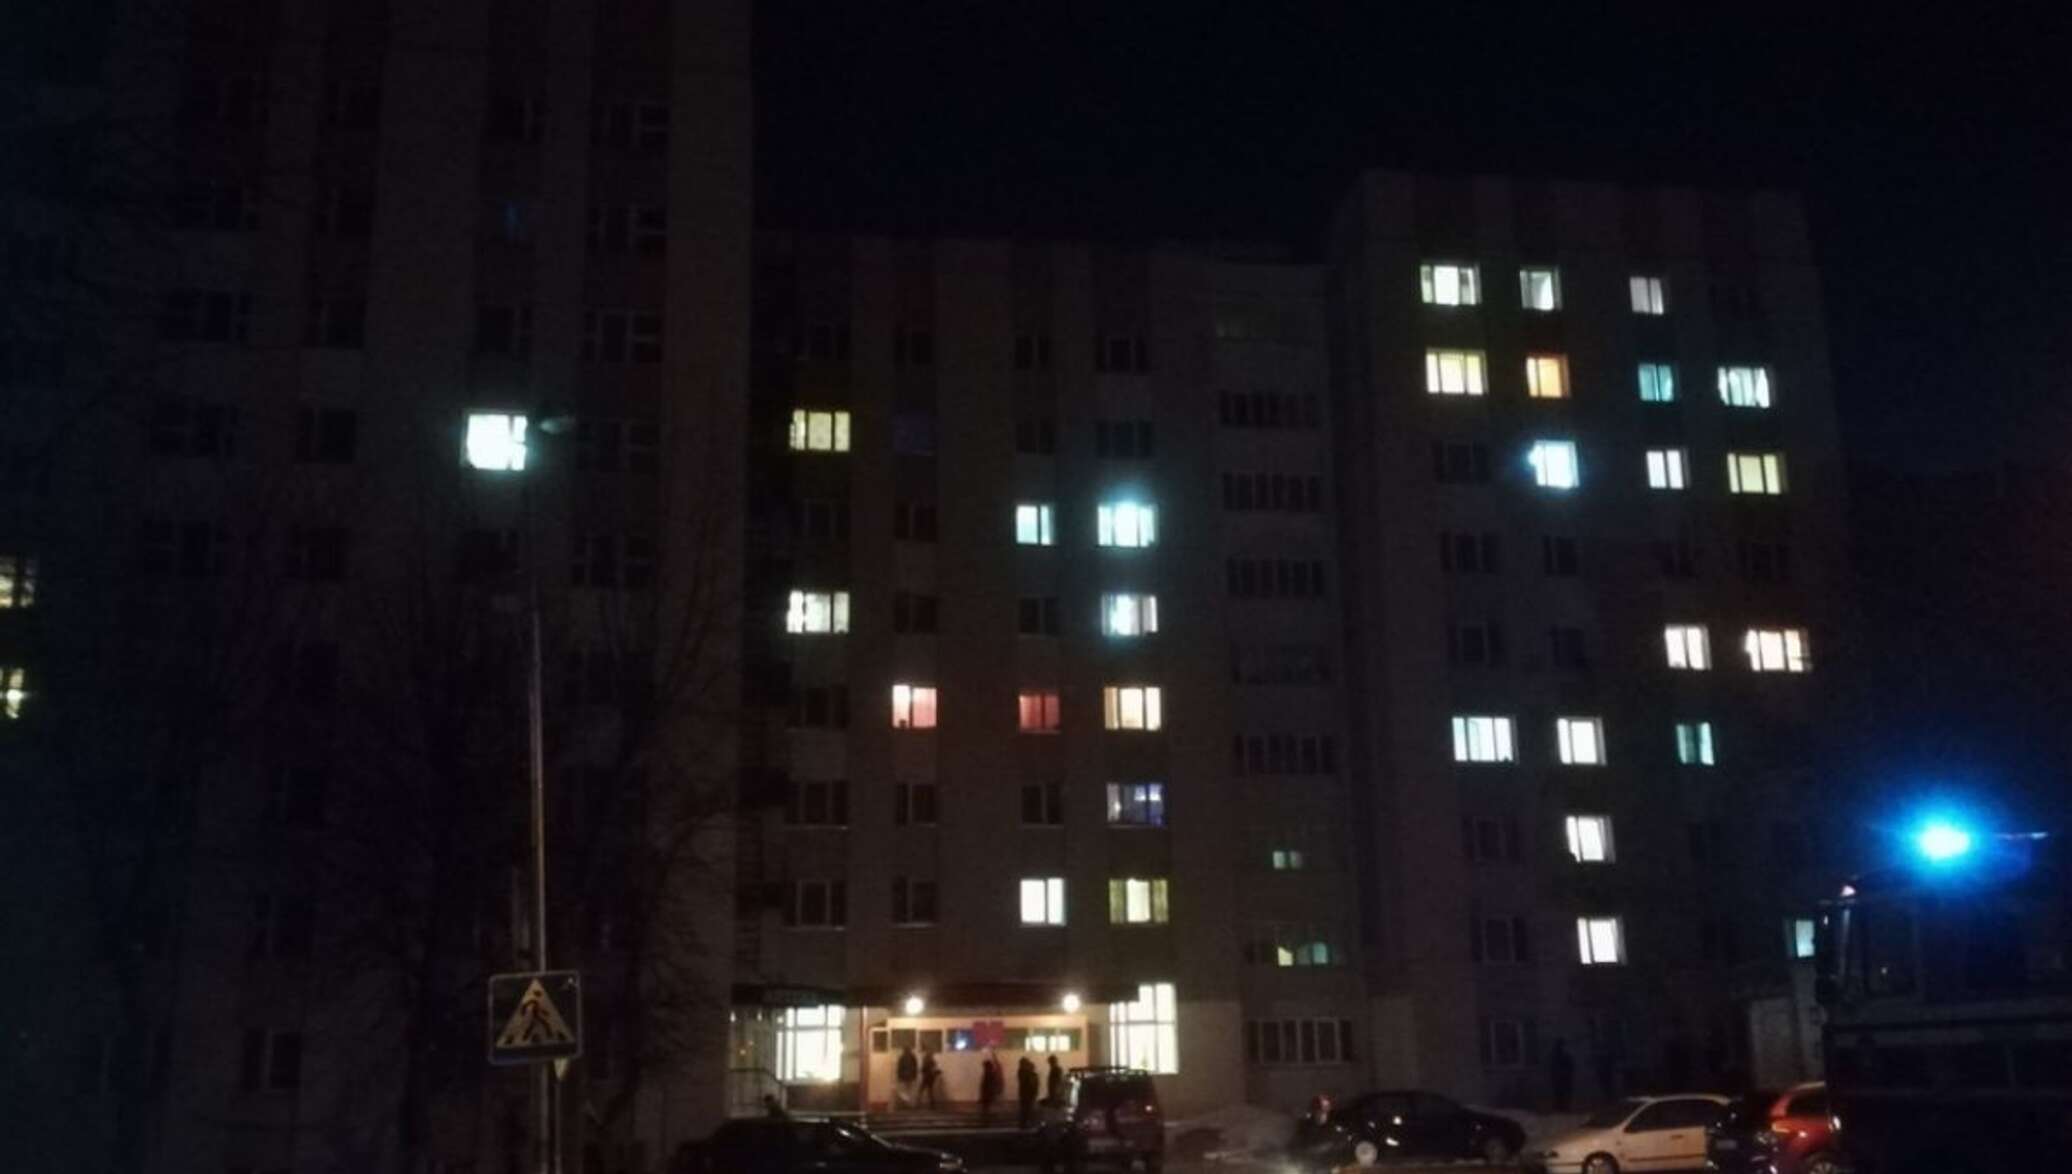 Ночное общежитие. Общежитие ночью. Фото здания общежития в ночное время суток. Спутник Молодечно ночью.